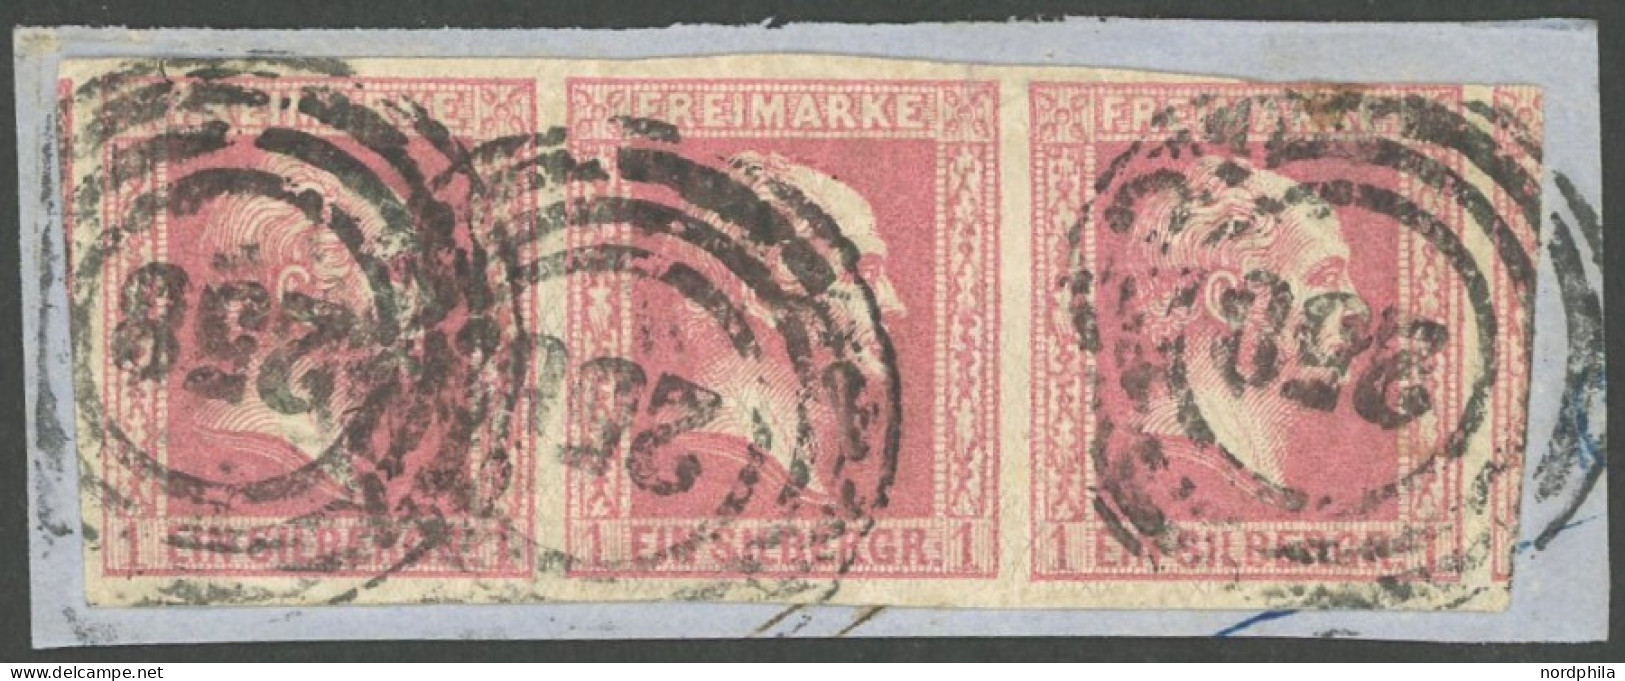 PREUSSEN 6a BrfStk, 1857, 1 Sgr. Rosa Im Waagerechten Dreierstreifen Auf Briefstück, Linke Marke Oben Berührt Sonst Brei - Usati